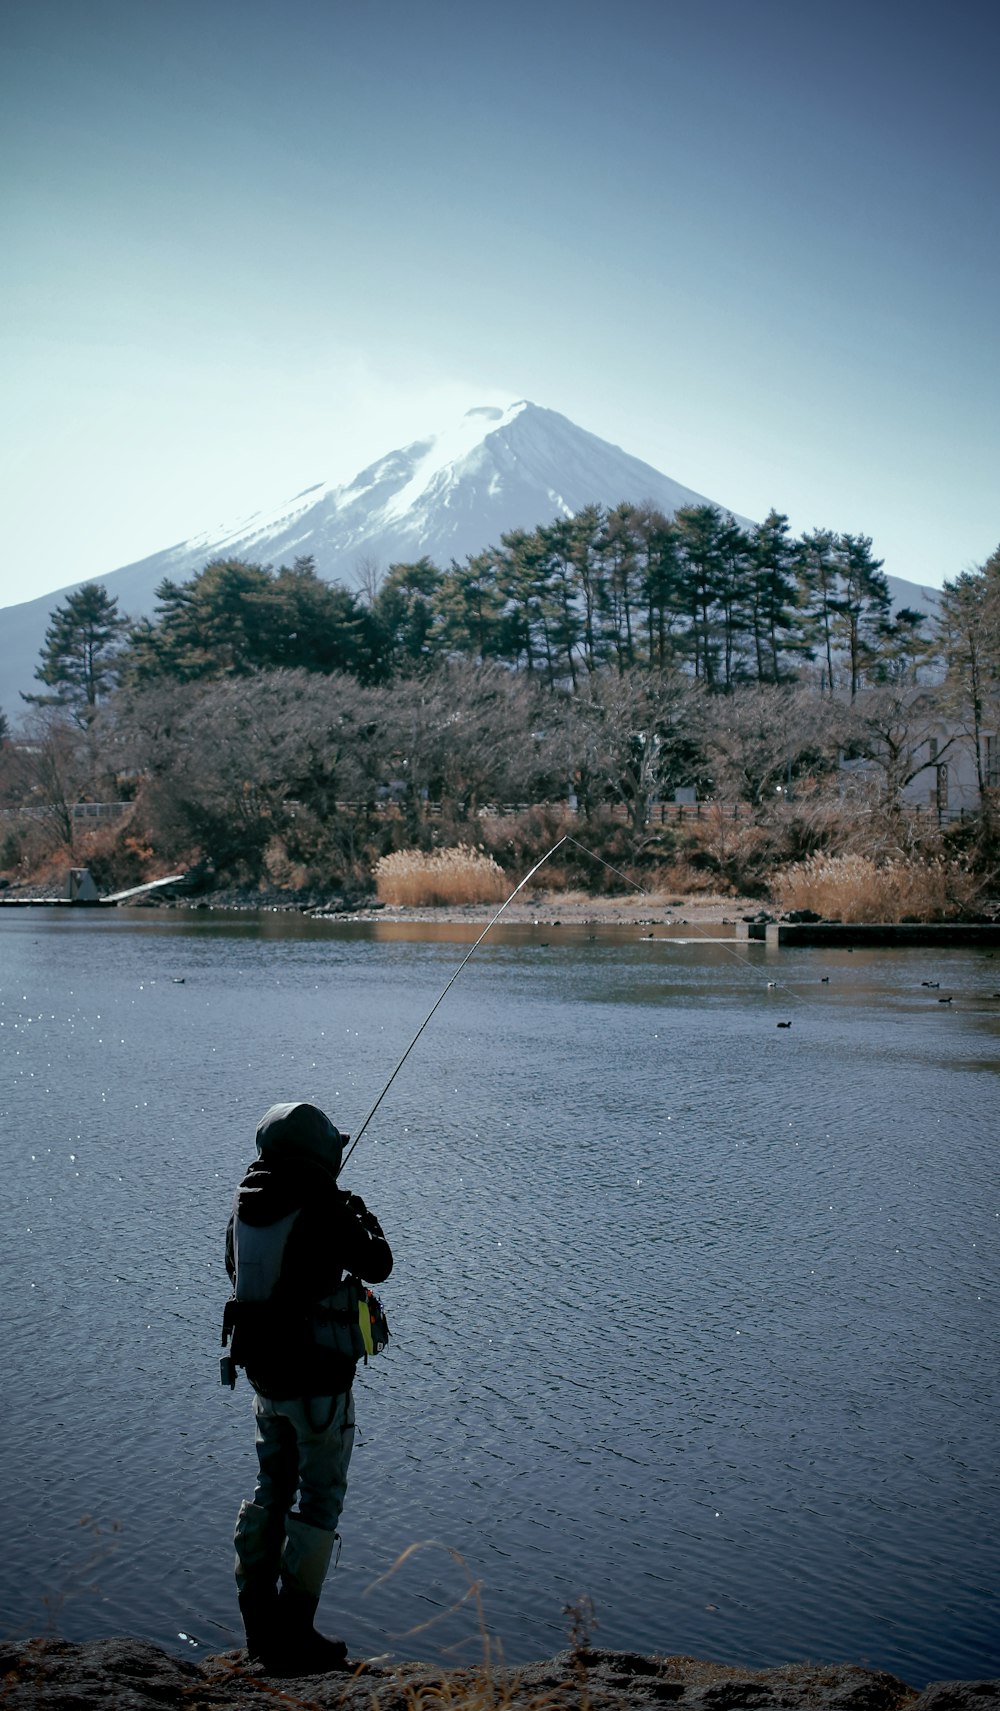 un homme pêchant sur un lac avec une montagne en arrière-plan